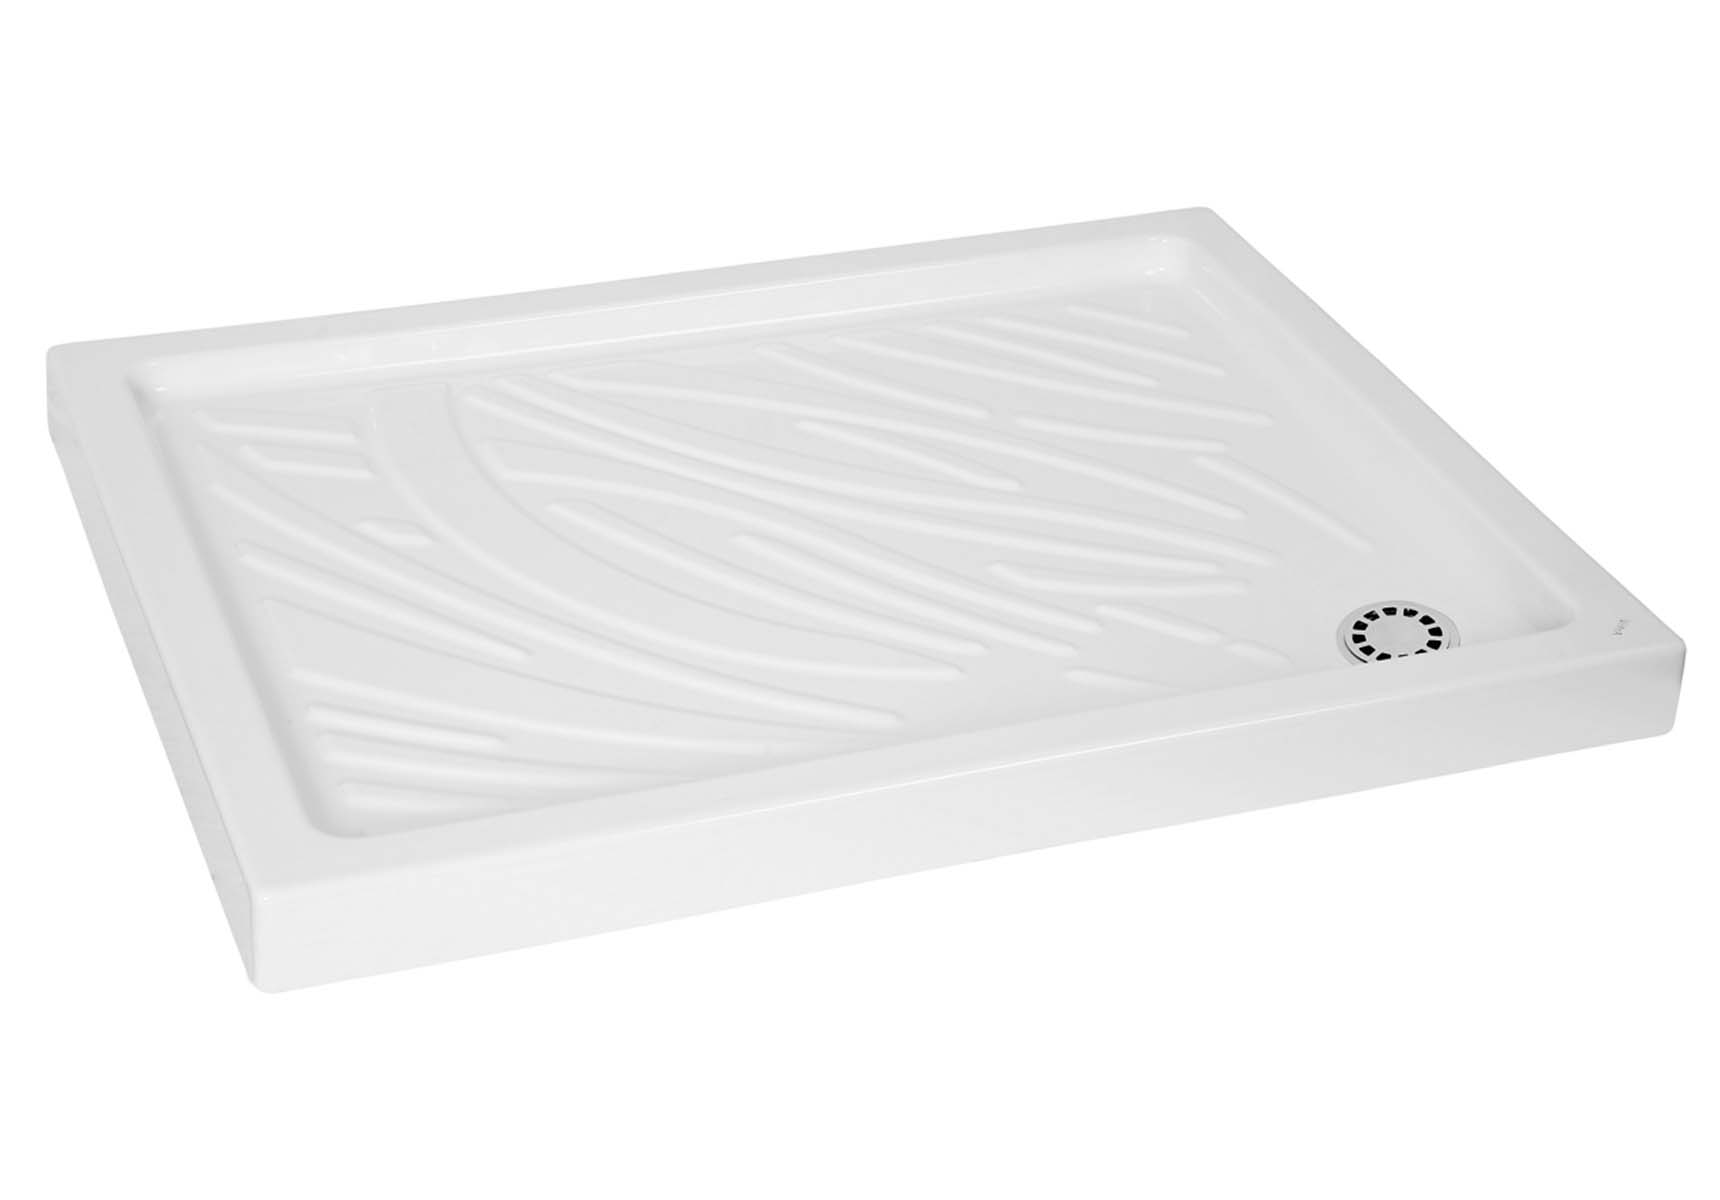 Arkitekt Rectangular Shower Tray, 80cm